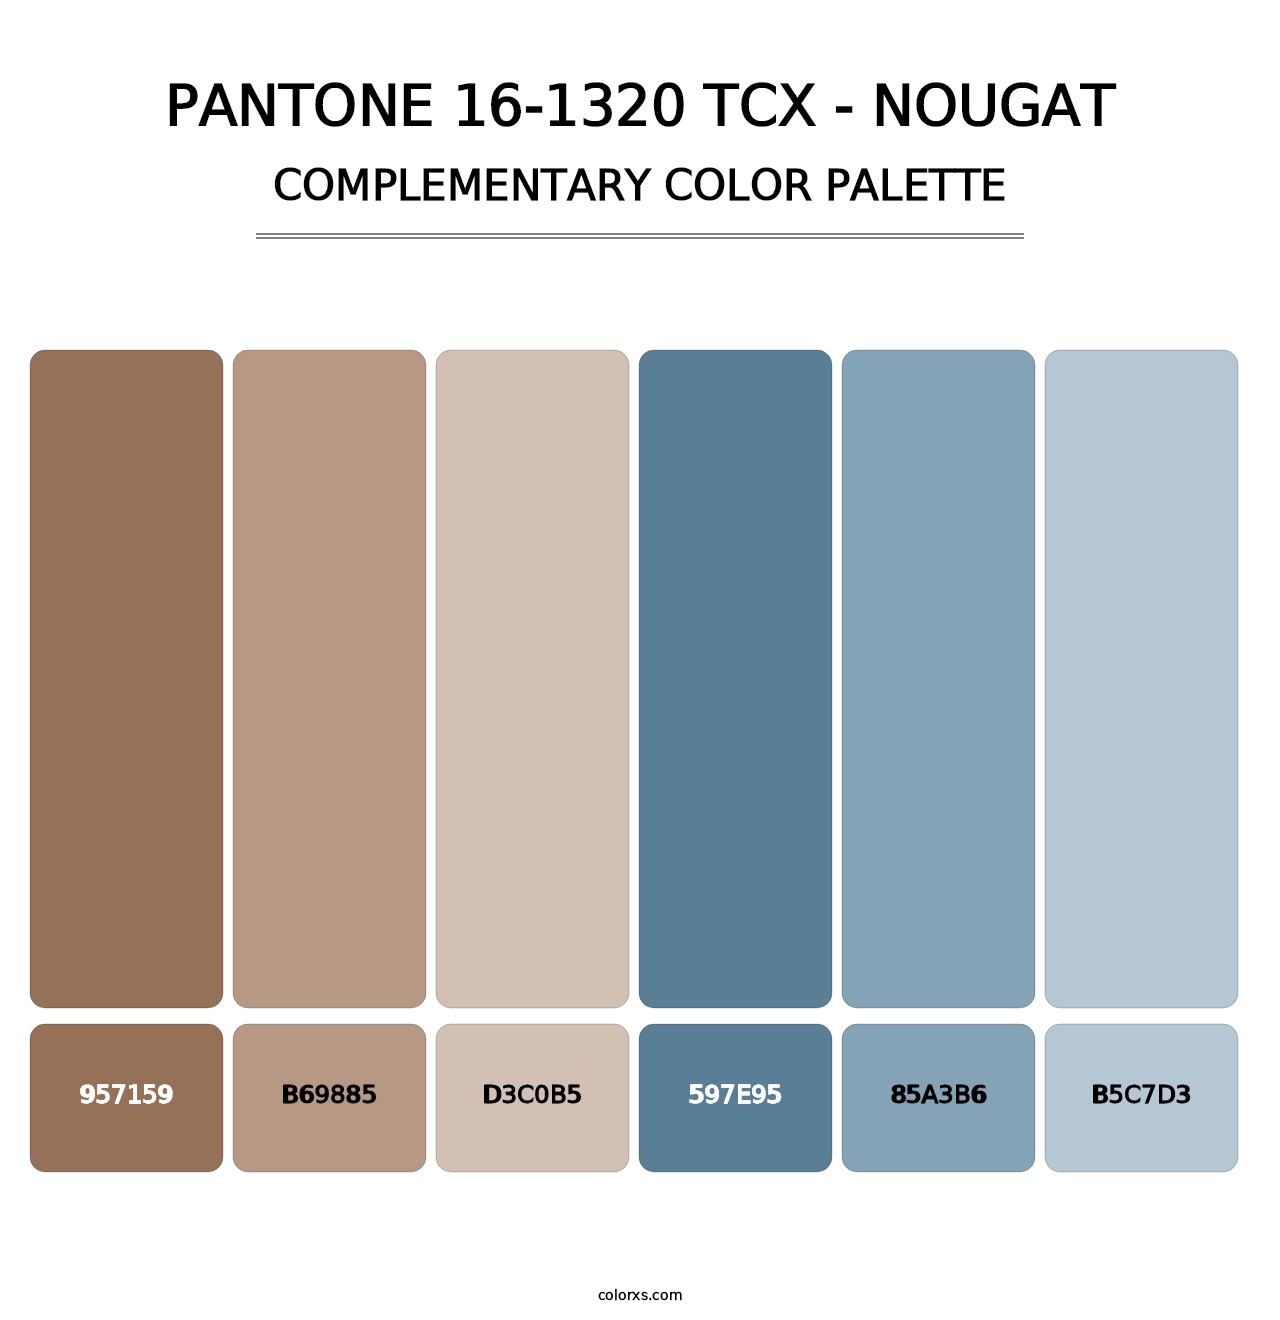 PANTONE 16-1320 TCX - Nougat - Complementary Color Palette